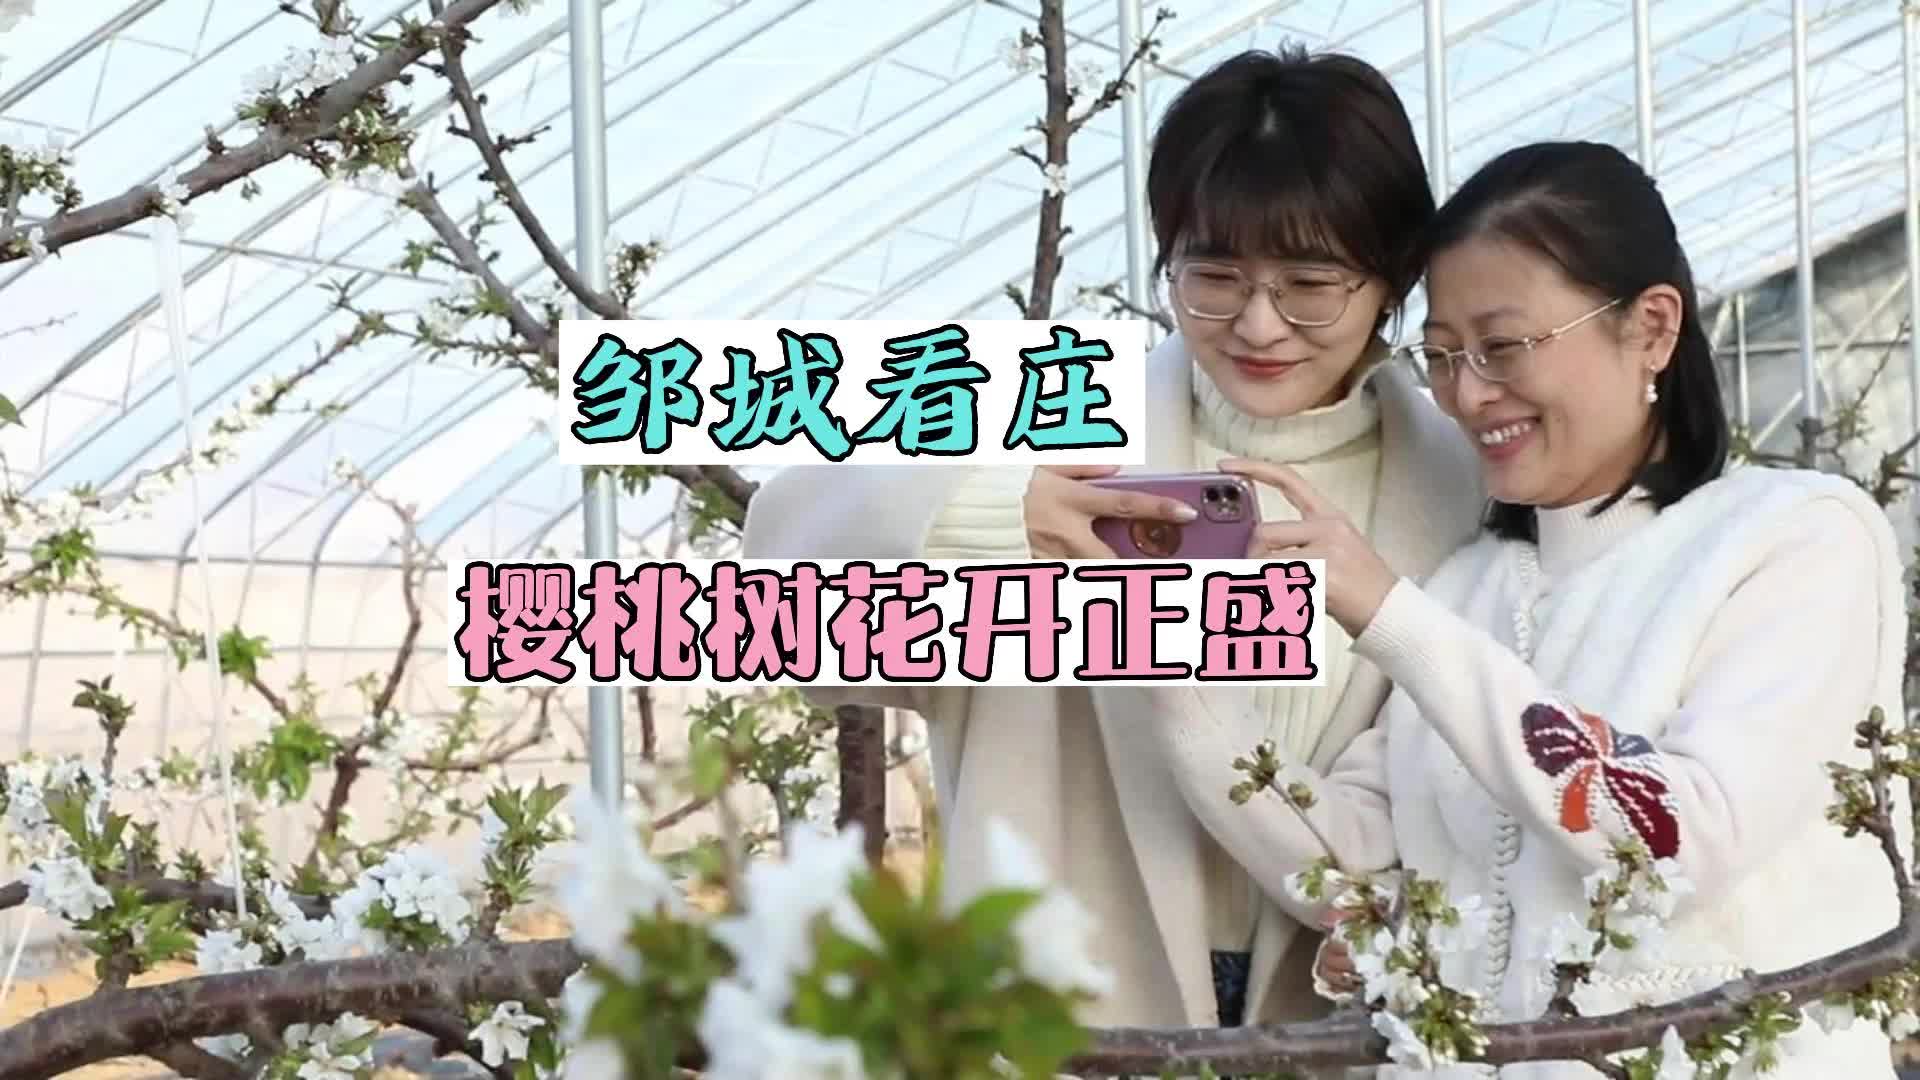 【邹视频·新闻】40秒 |邹城看庄：樱桃树花开正盛